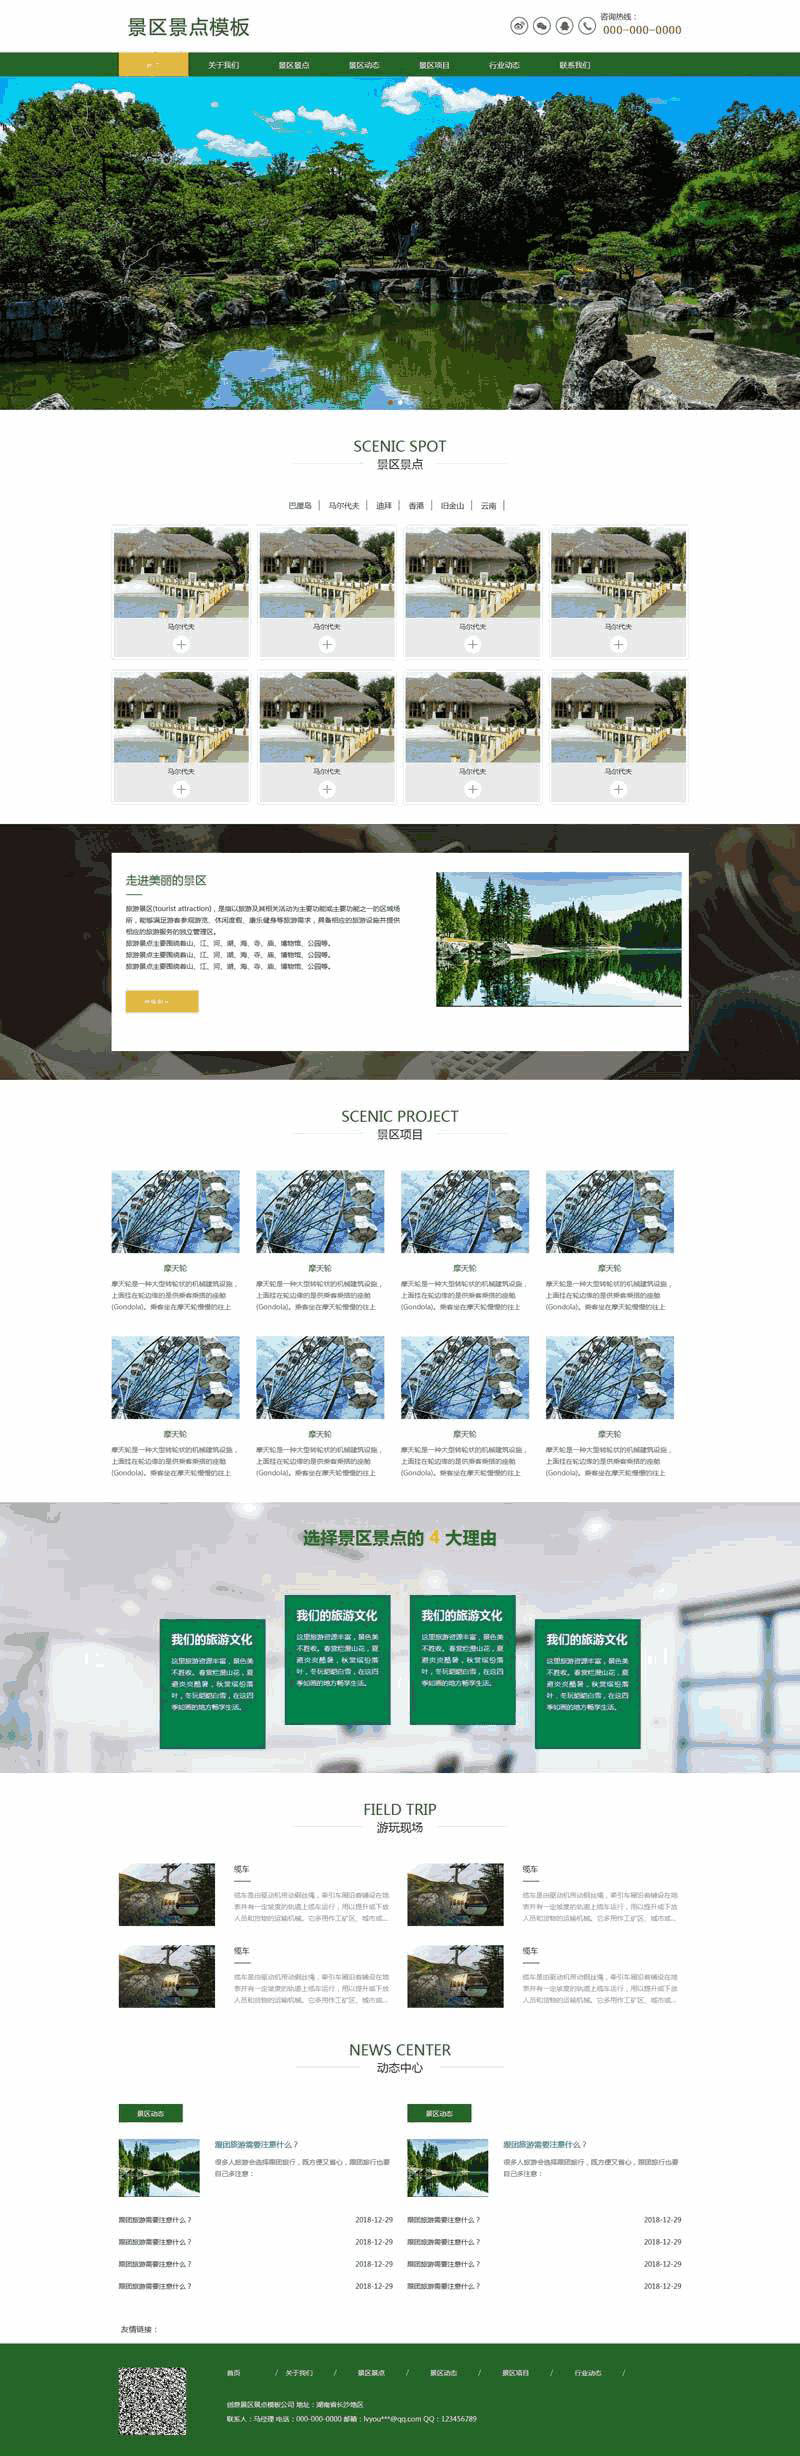 绿色景区景点旅游官网网站主题模板下载演示图